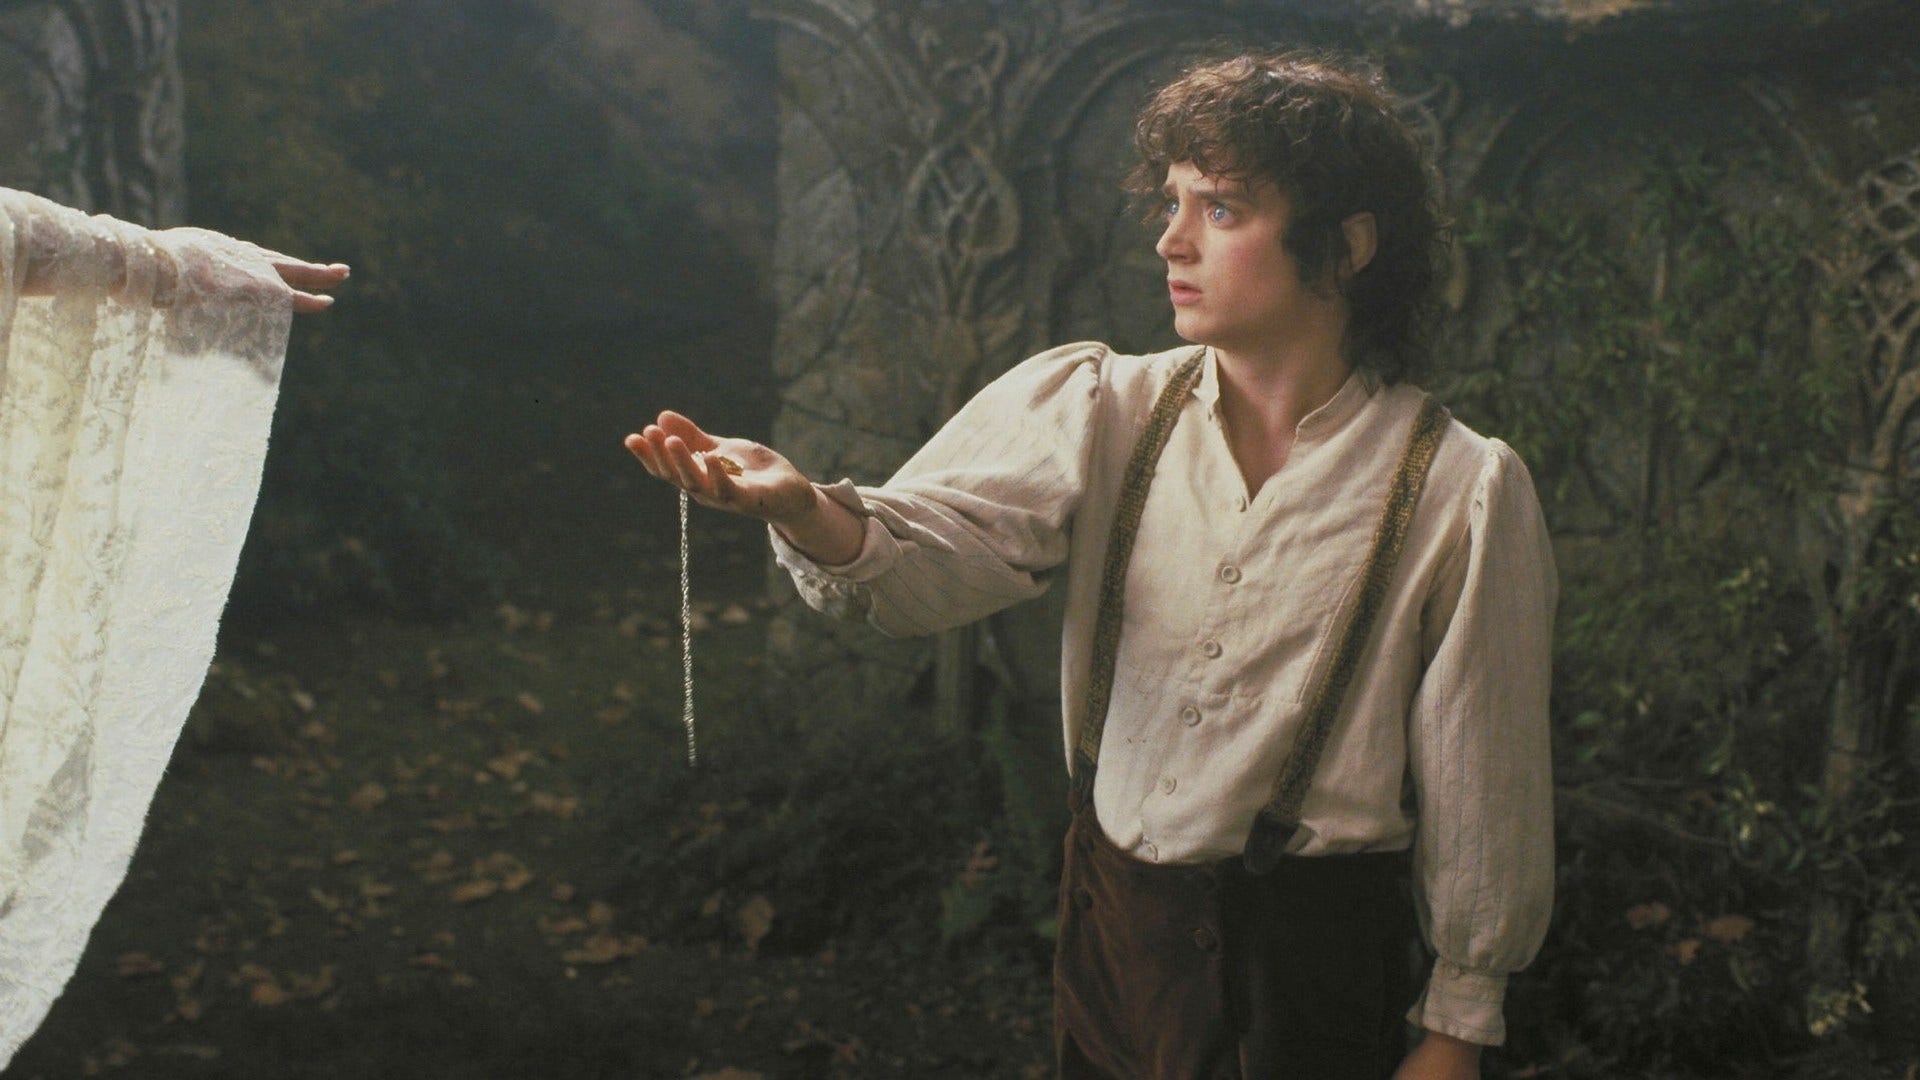 ”Jaja, vi kör väl ett varv till då. Hej, det är jag, Frodo, jag har lite problem med den här ringen.”